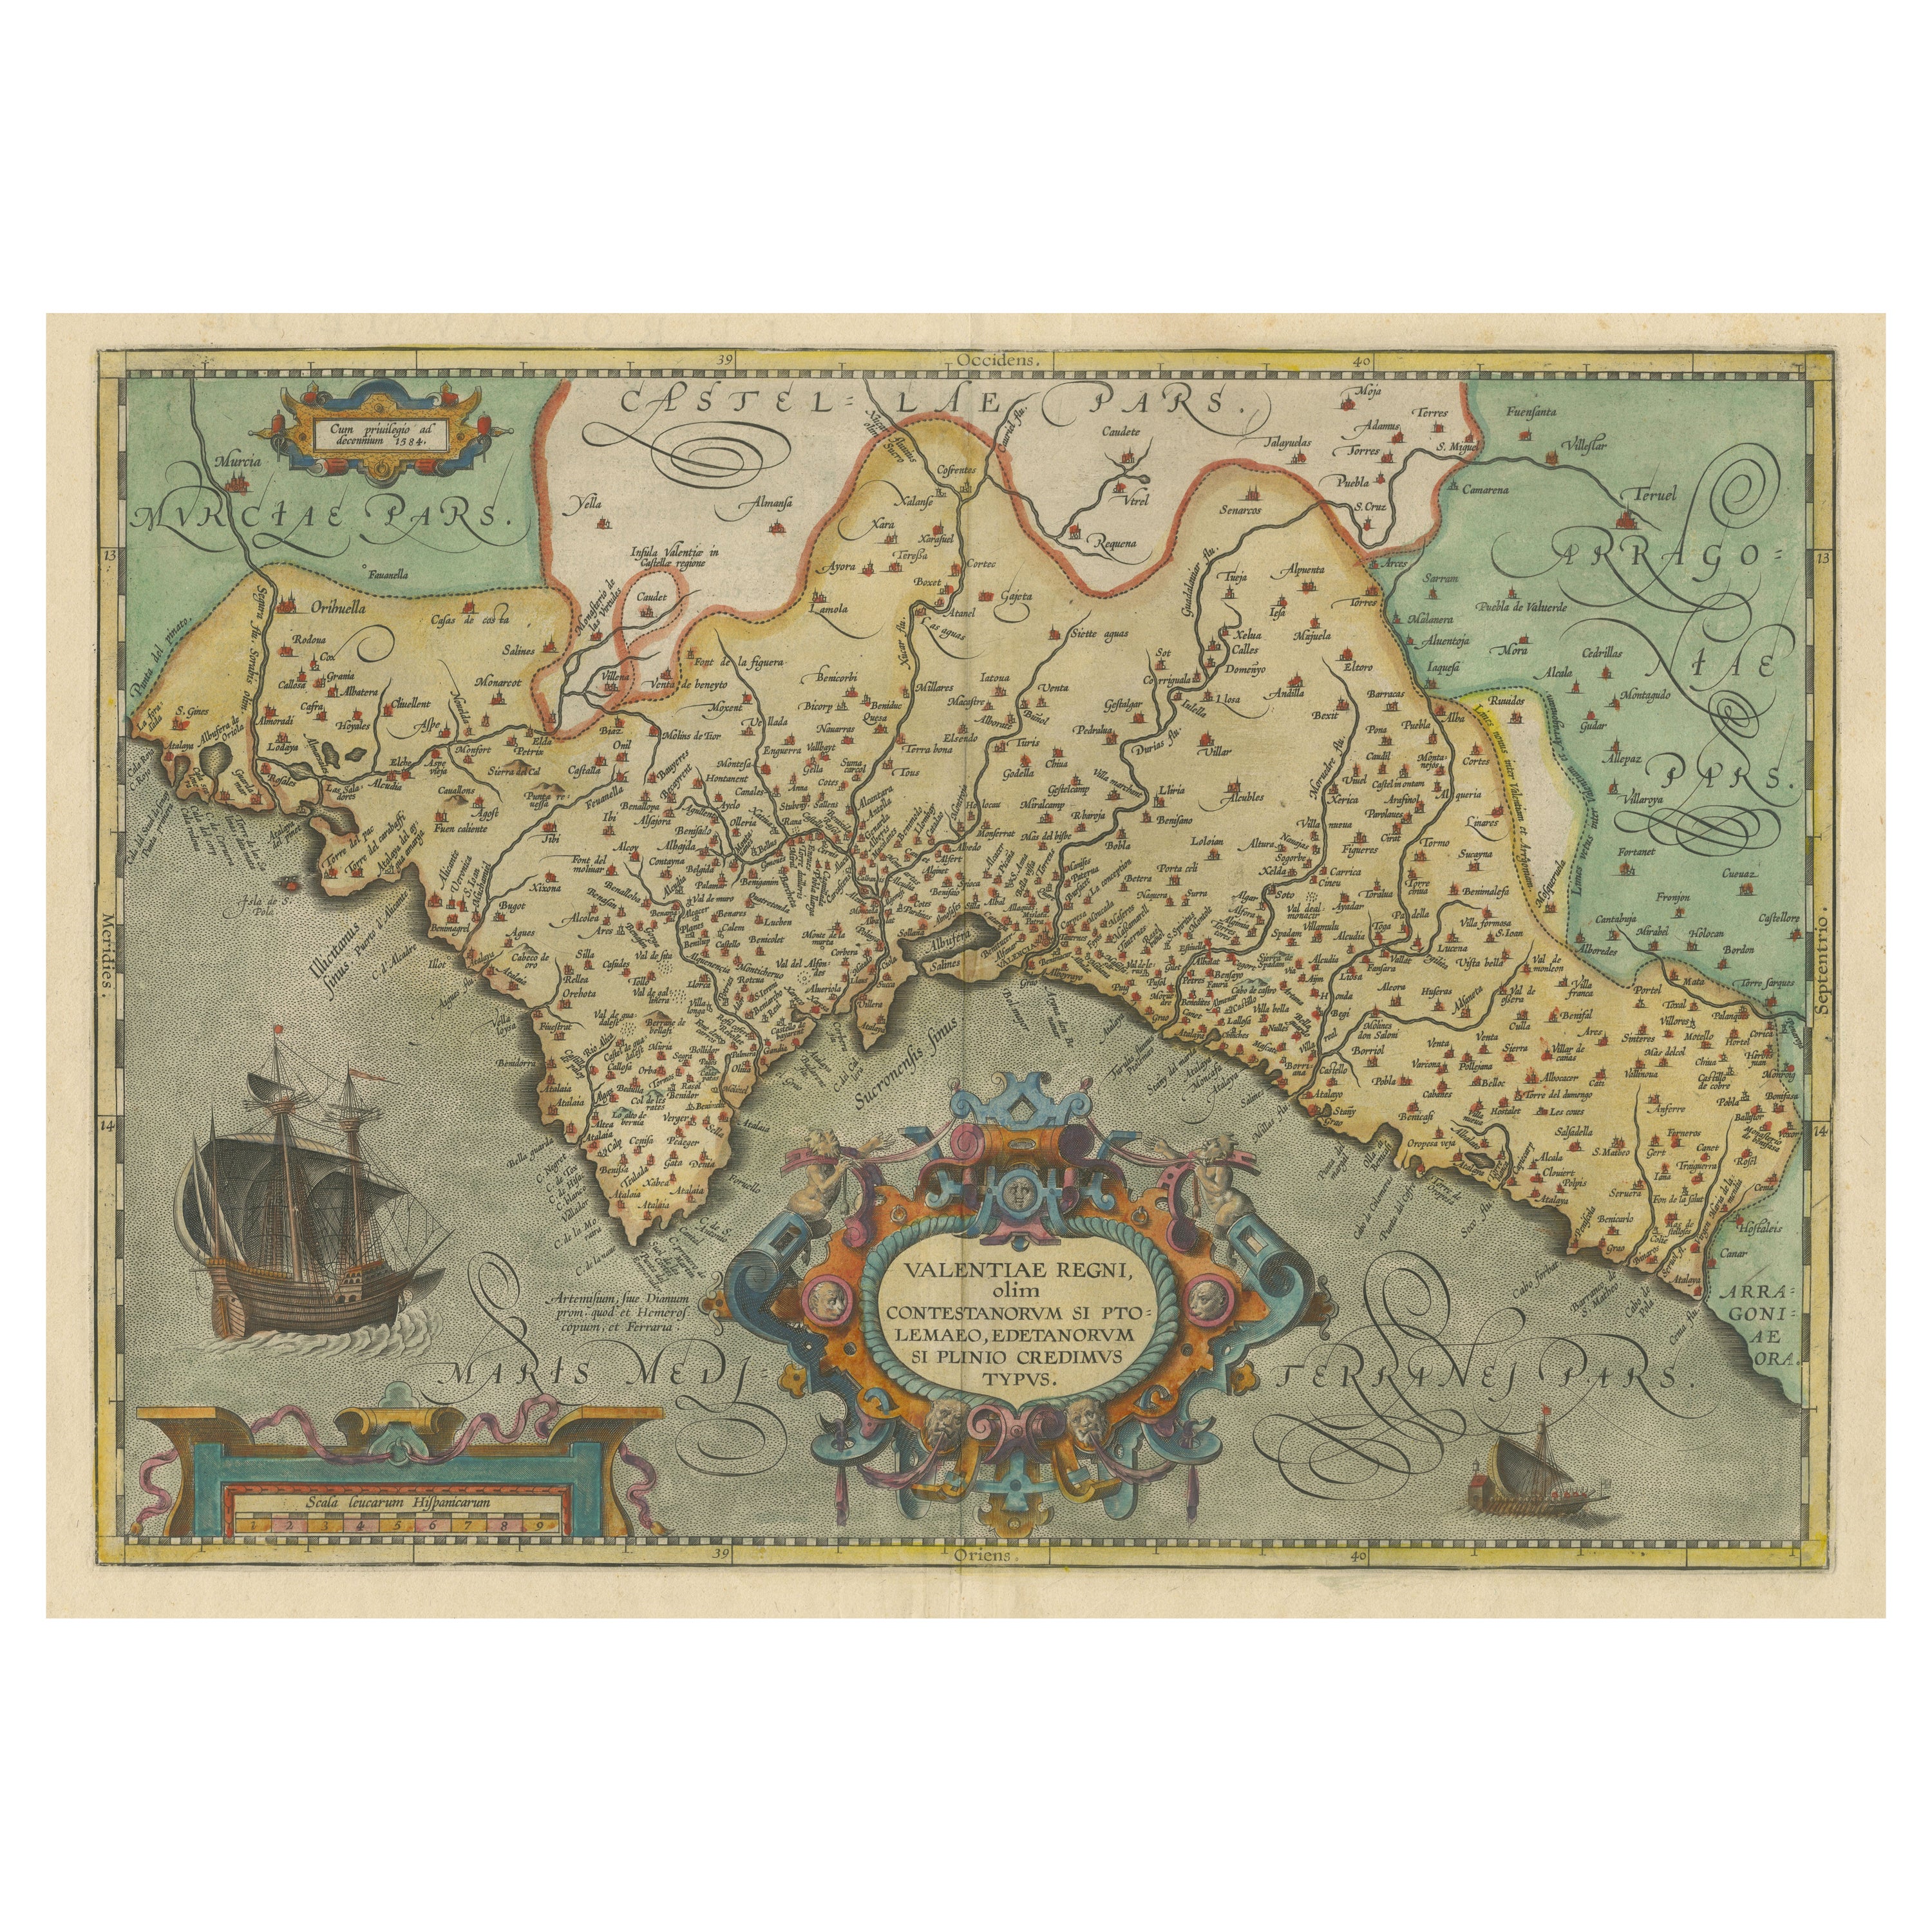 Carte ancienne décorative de Valence dans le sud de l'Espagne, vers 1601